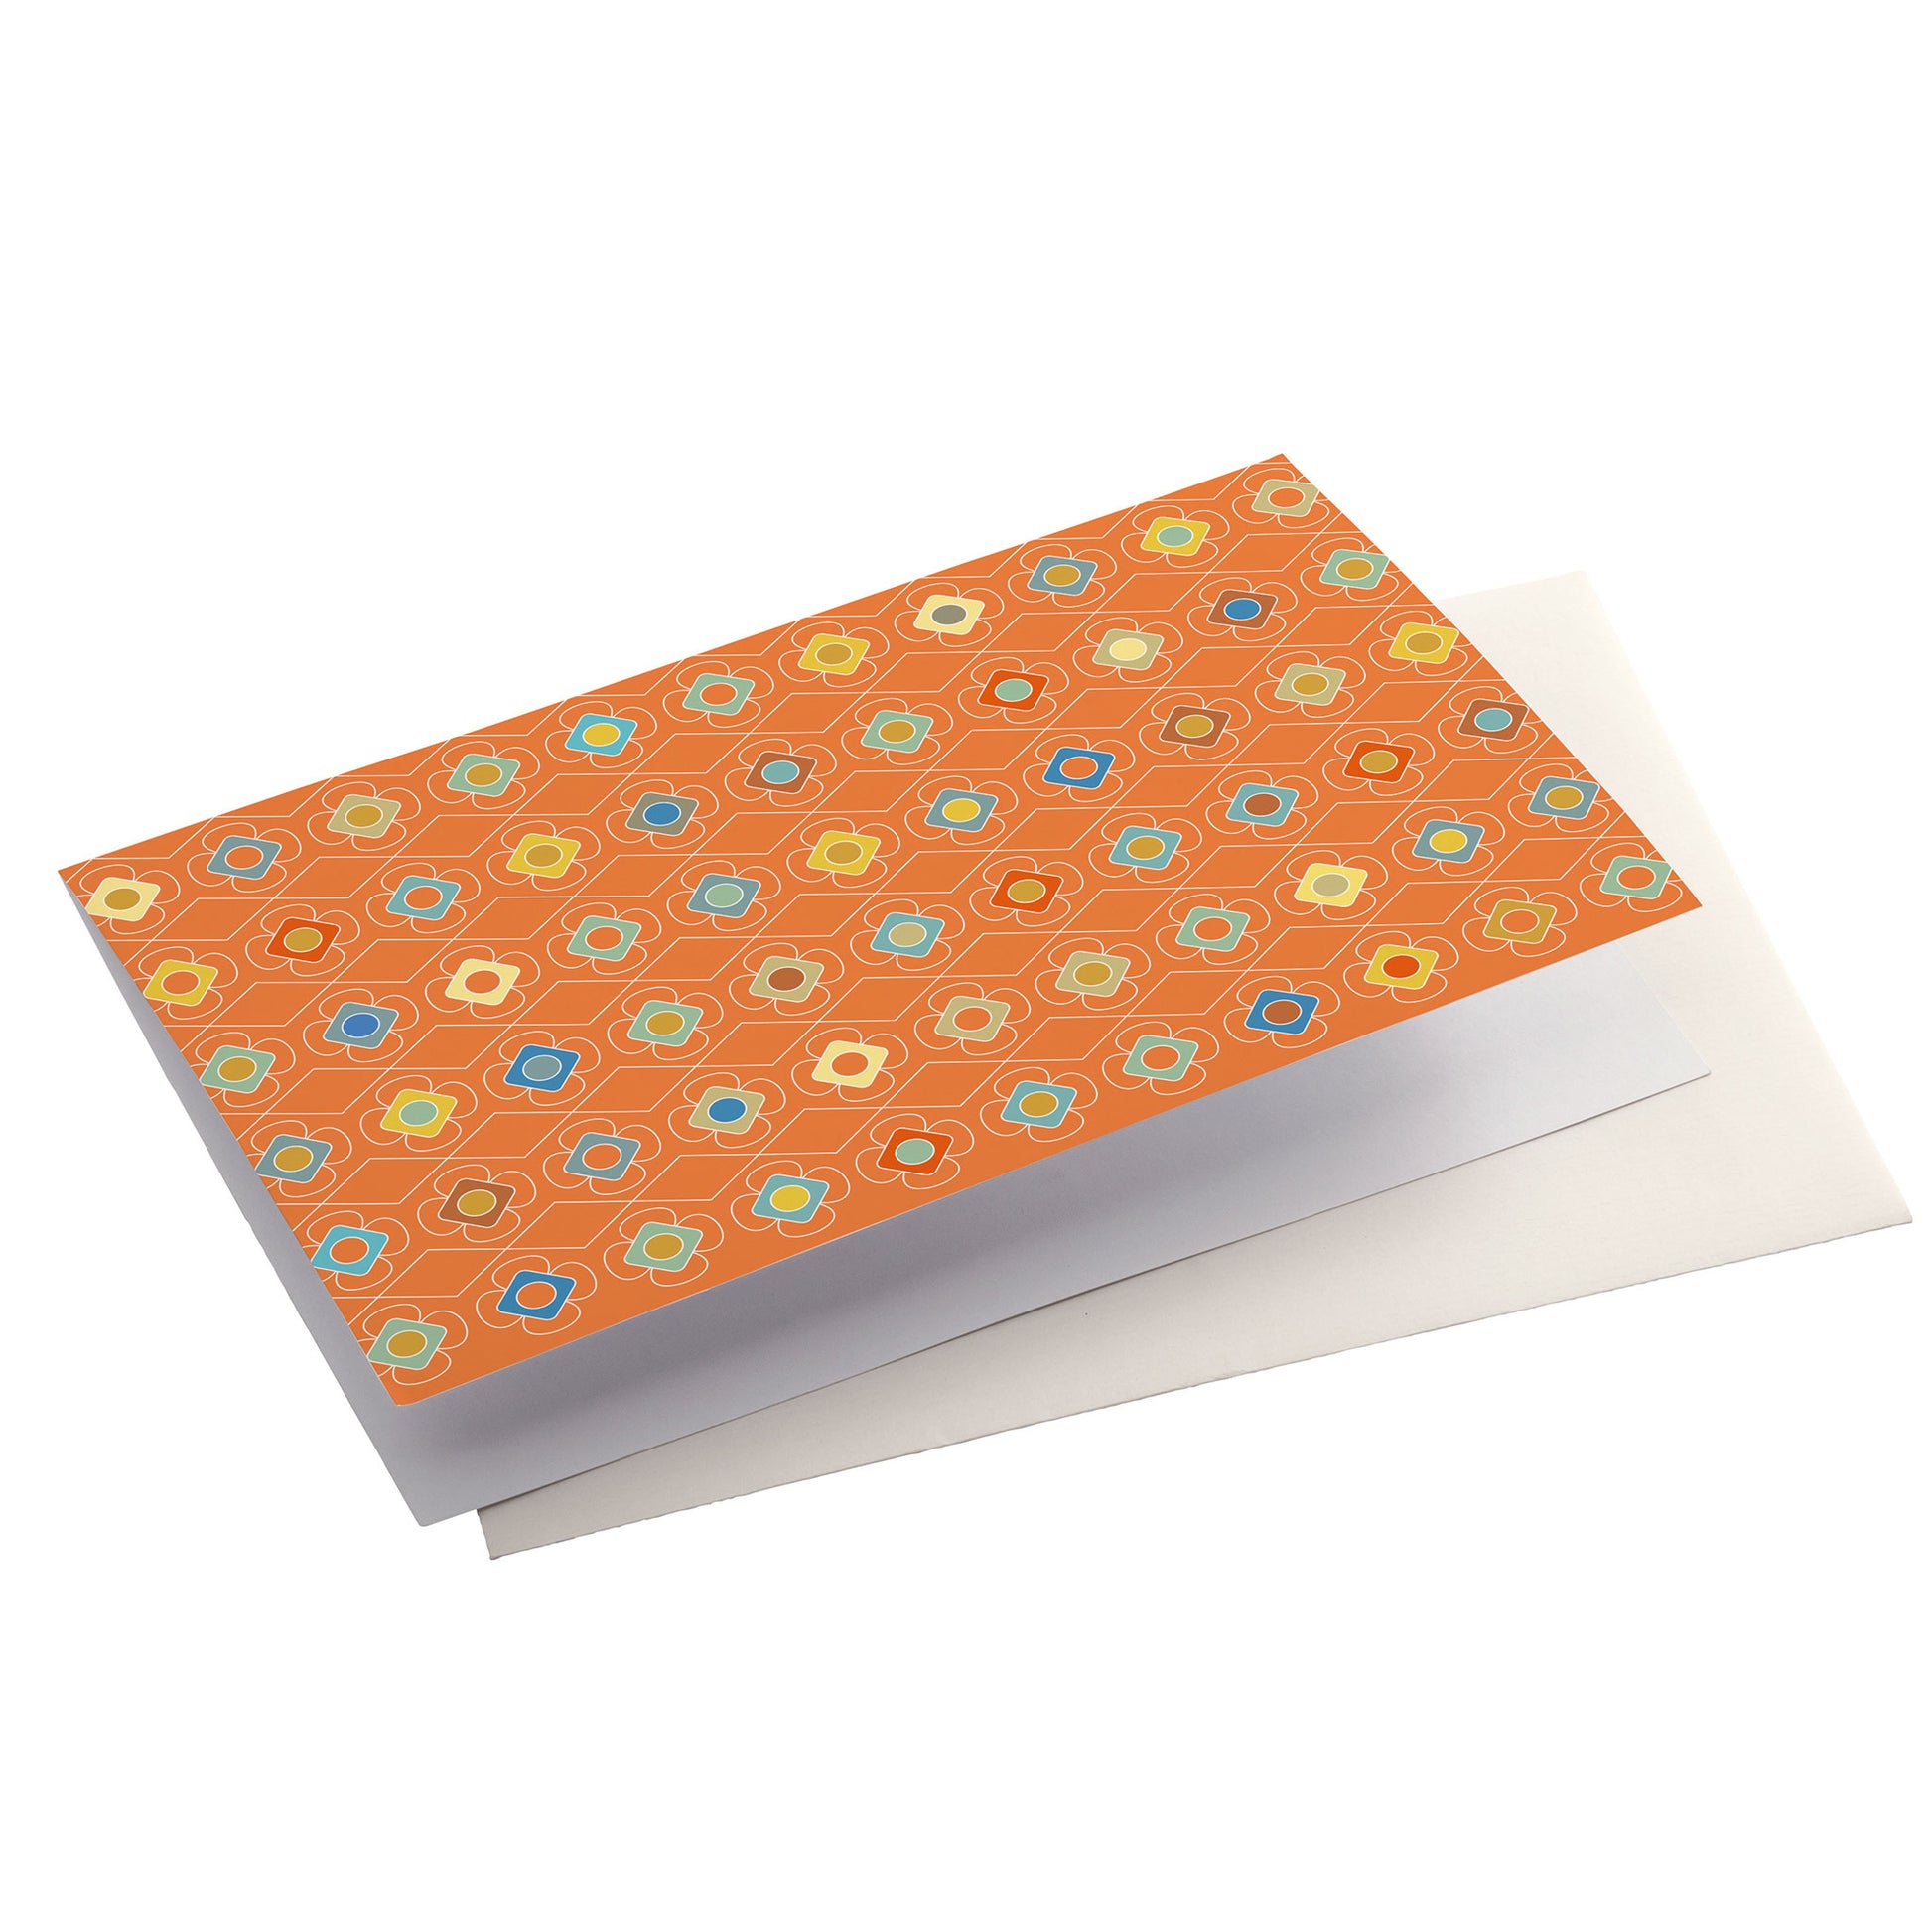 Productafbeelding, wenskaart "kleur carrousel oranje", zijaanzicht liggend met een envelop